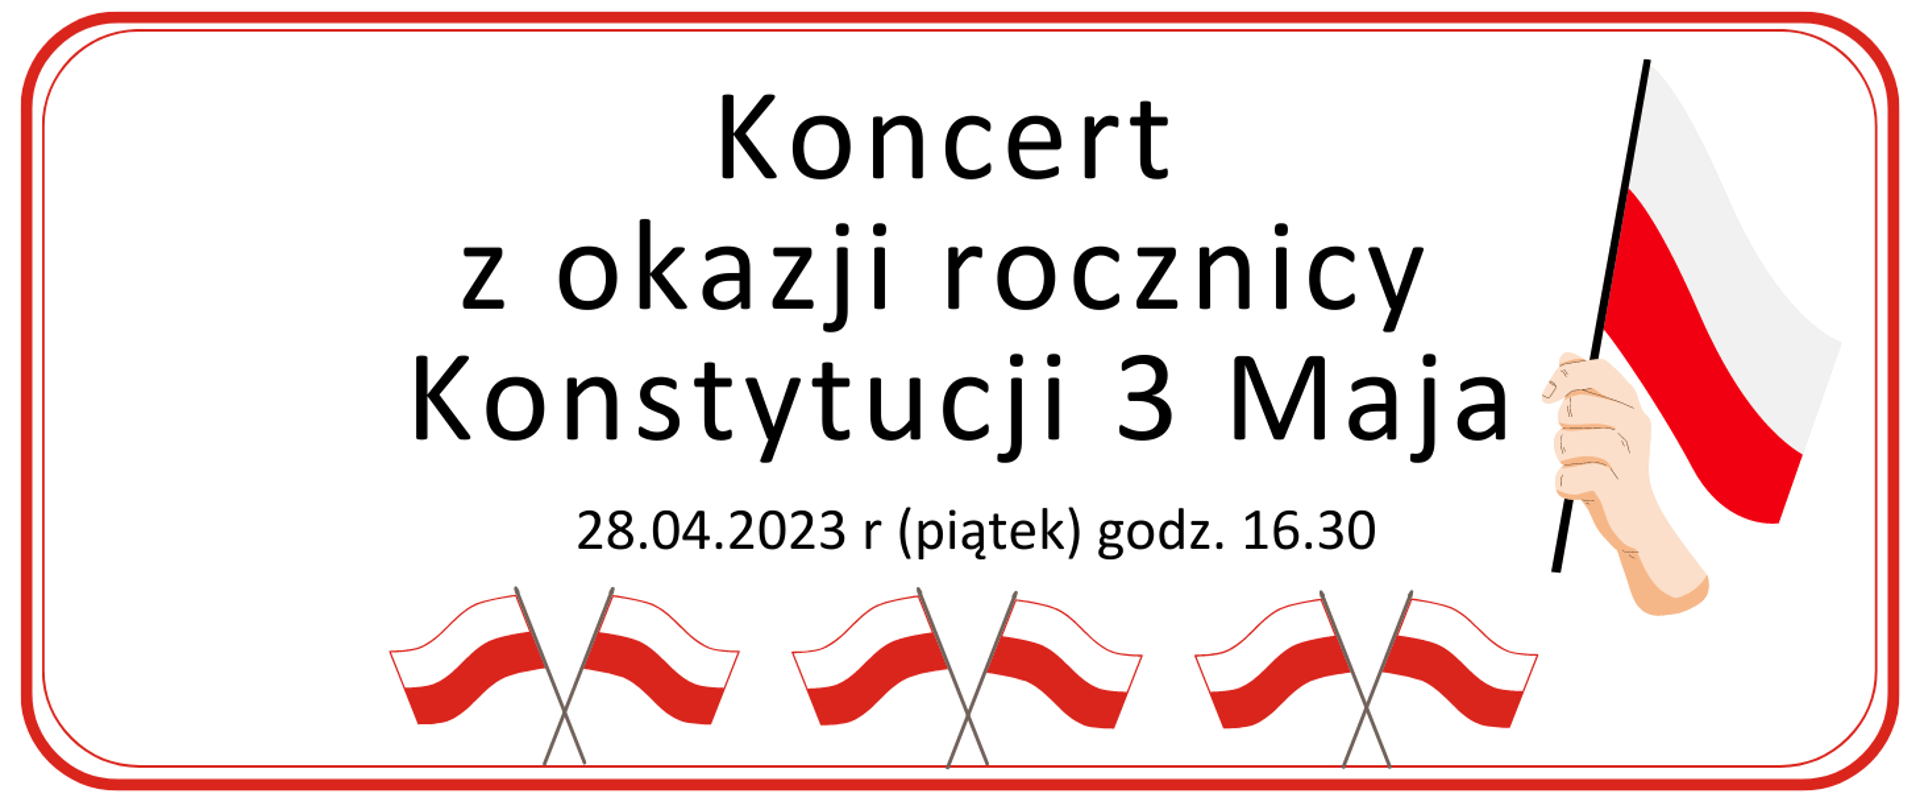 Plakat na białłym tle chorągiewki i informacja o koncercie z okazji Konstytucji 3 Maja